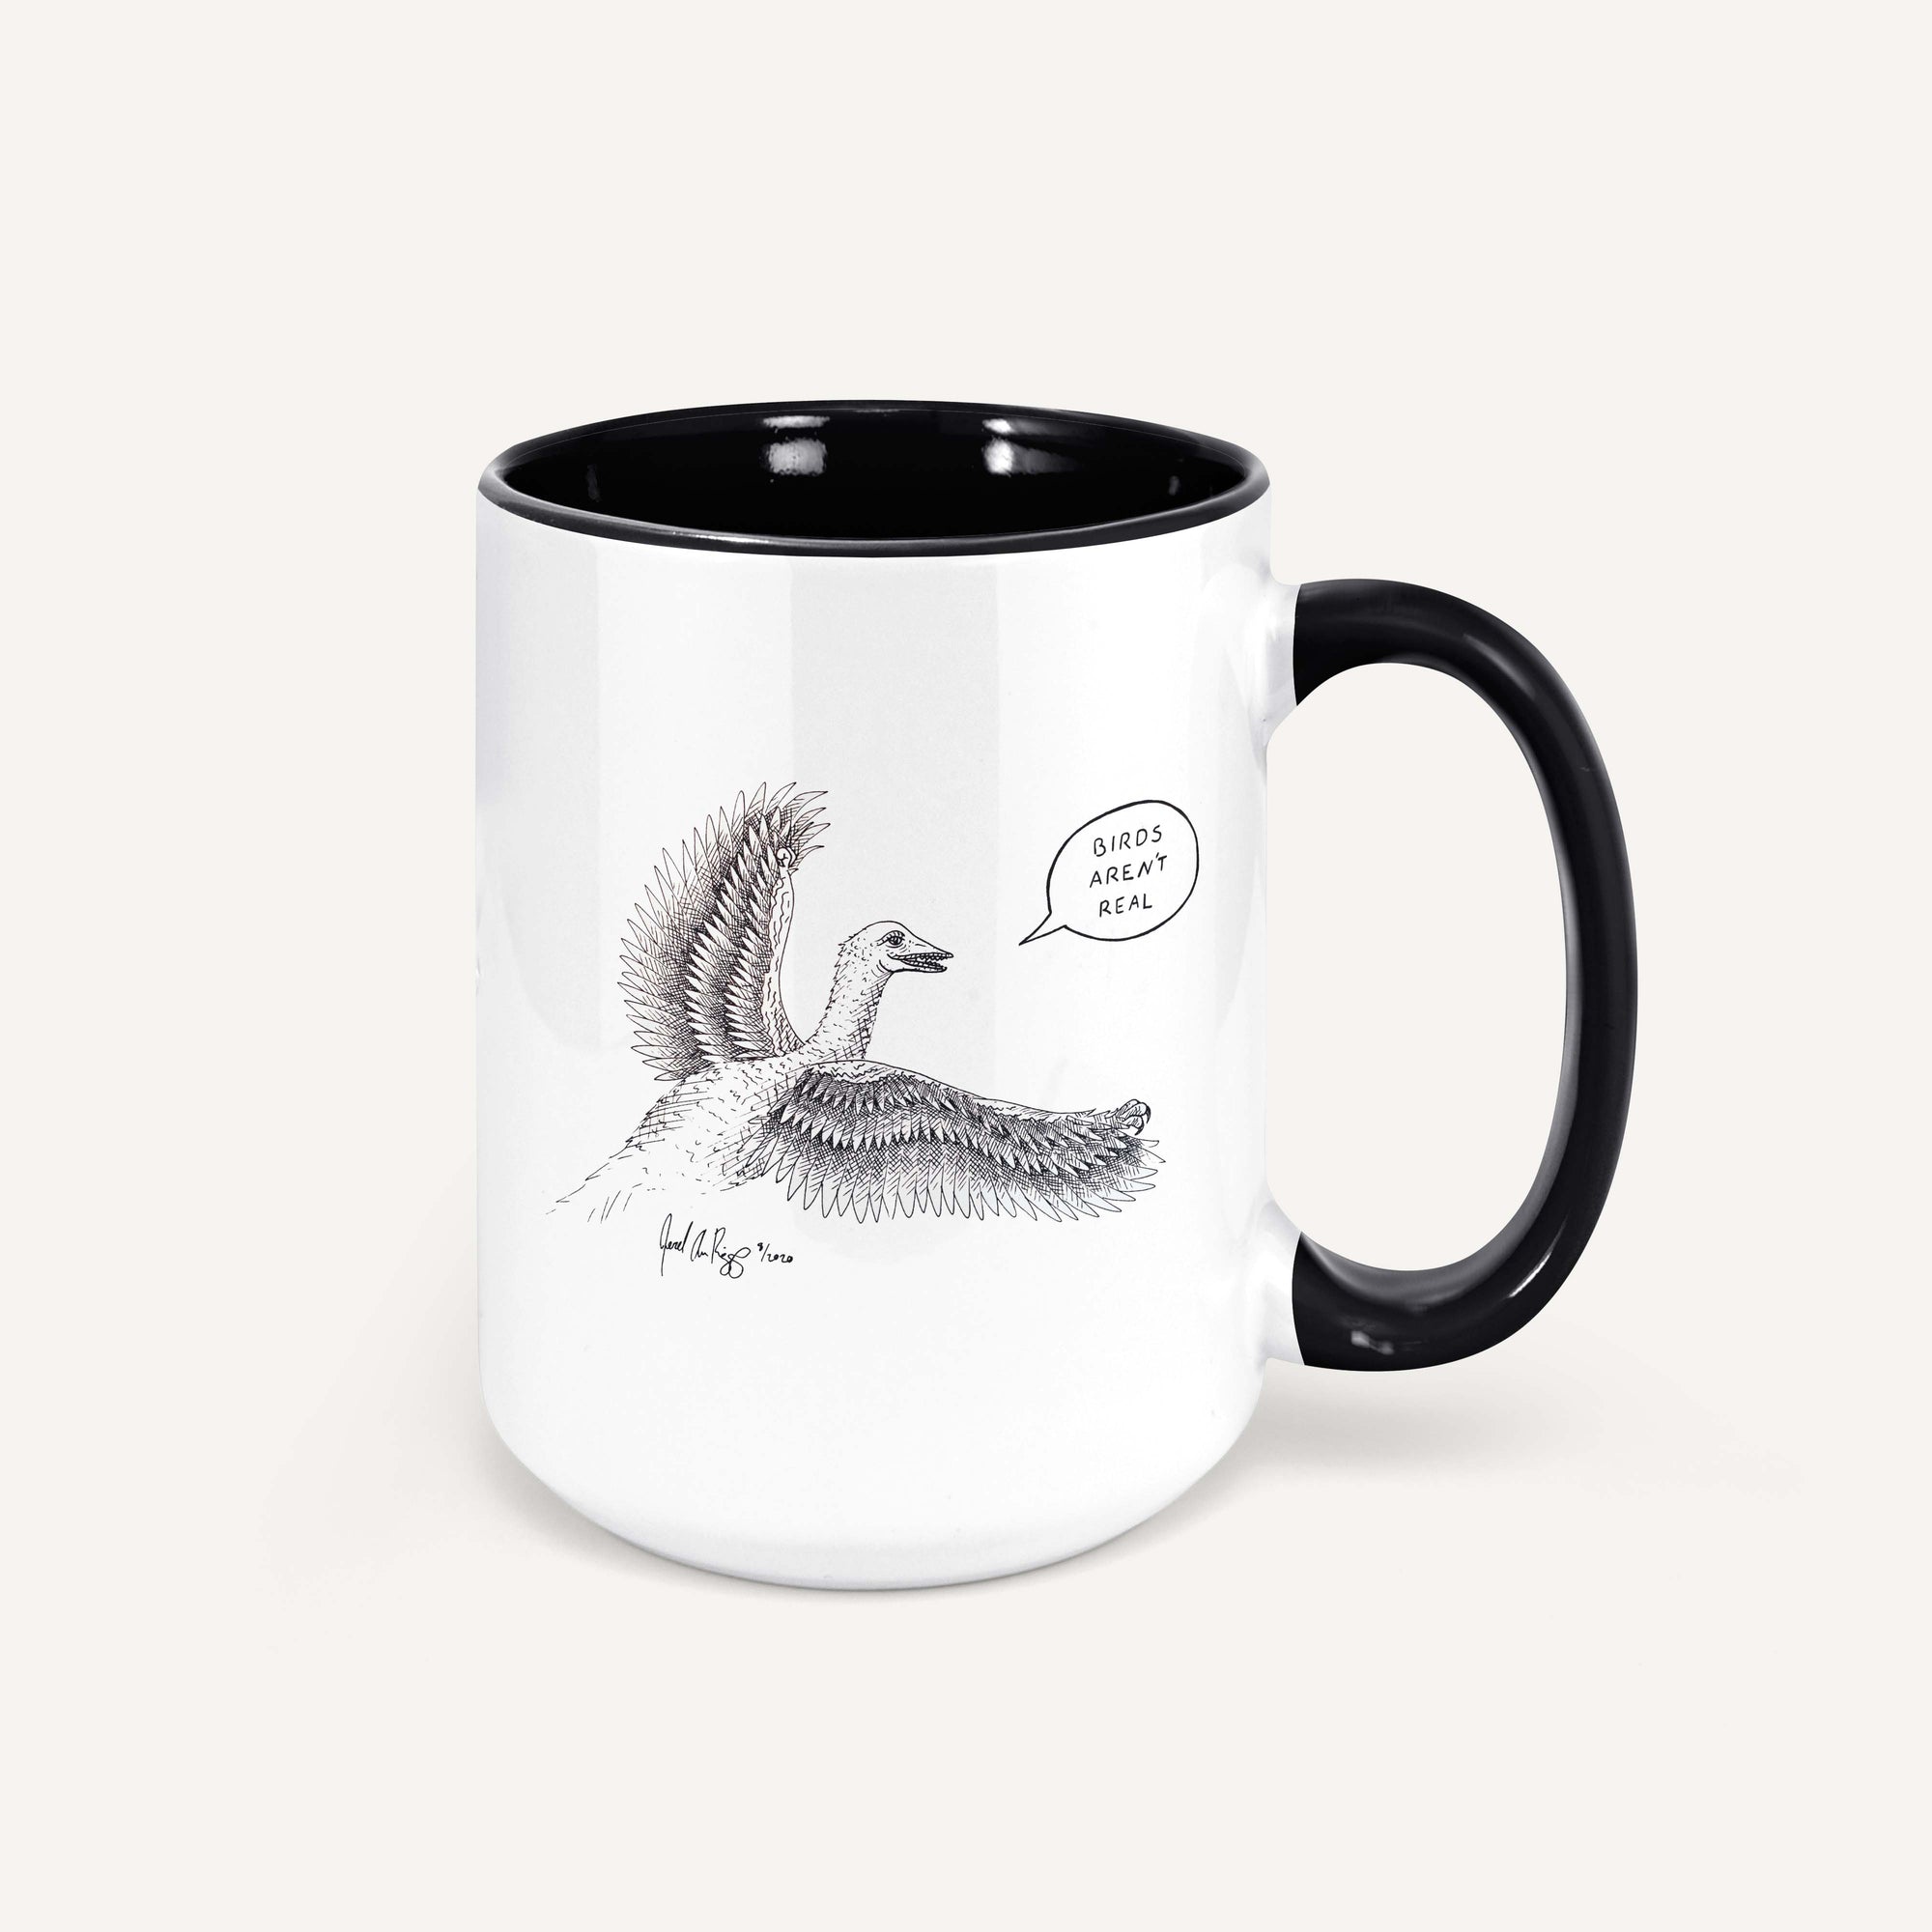 "Birds Aren't Real" (Conspiracy Dinos) - 15oz Coffee Mug